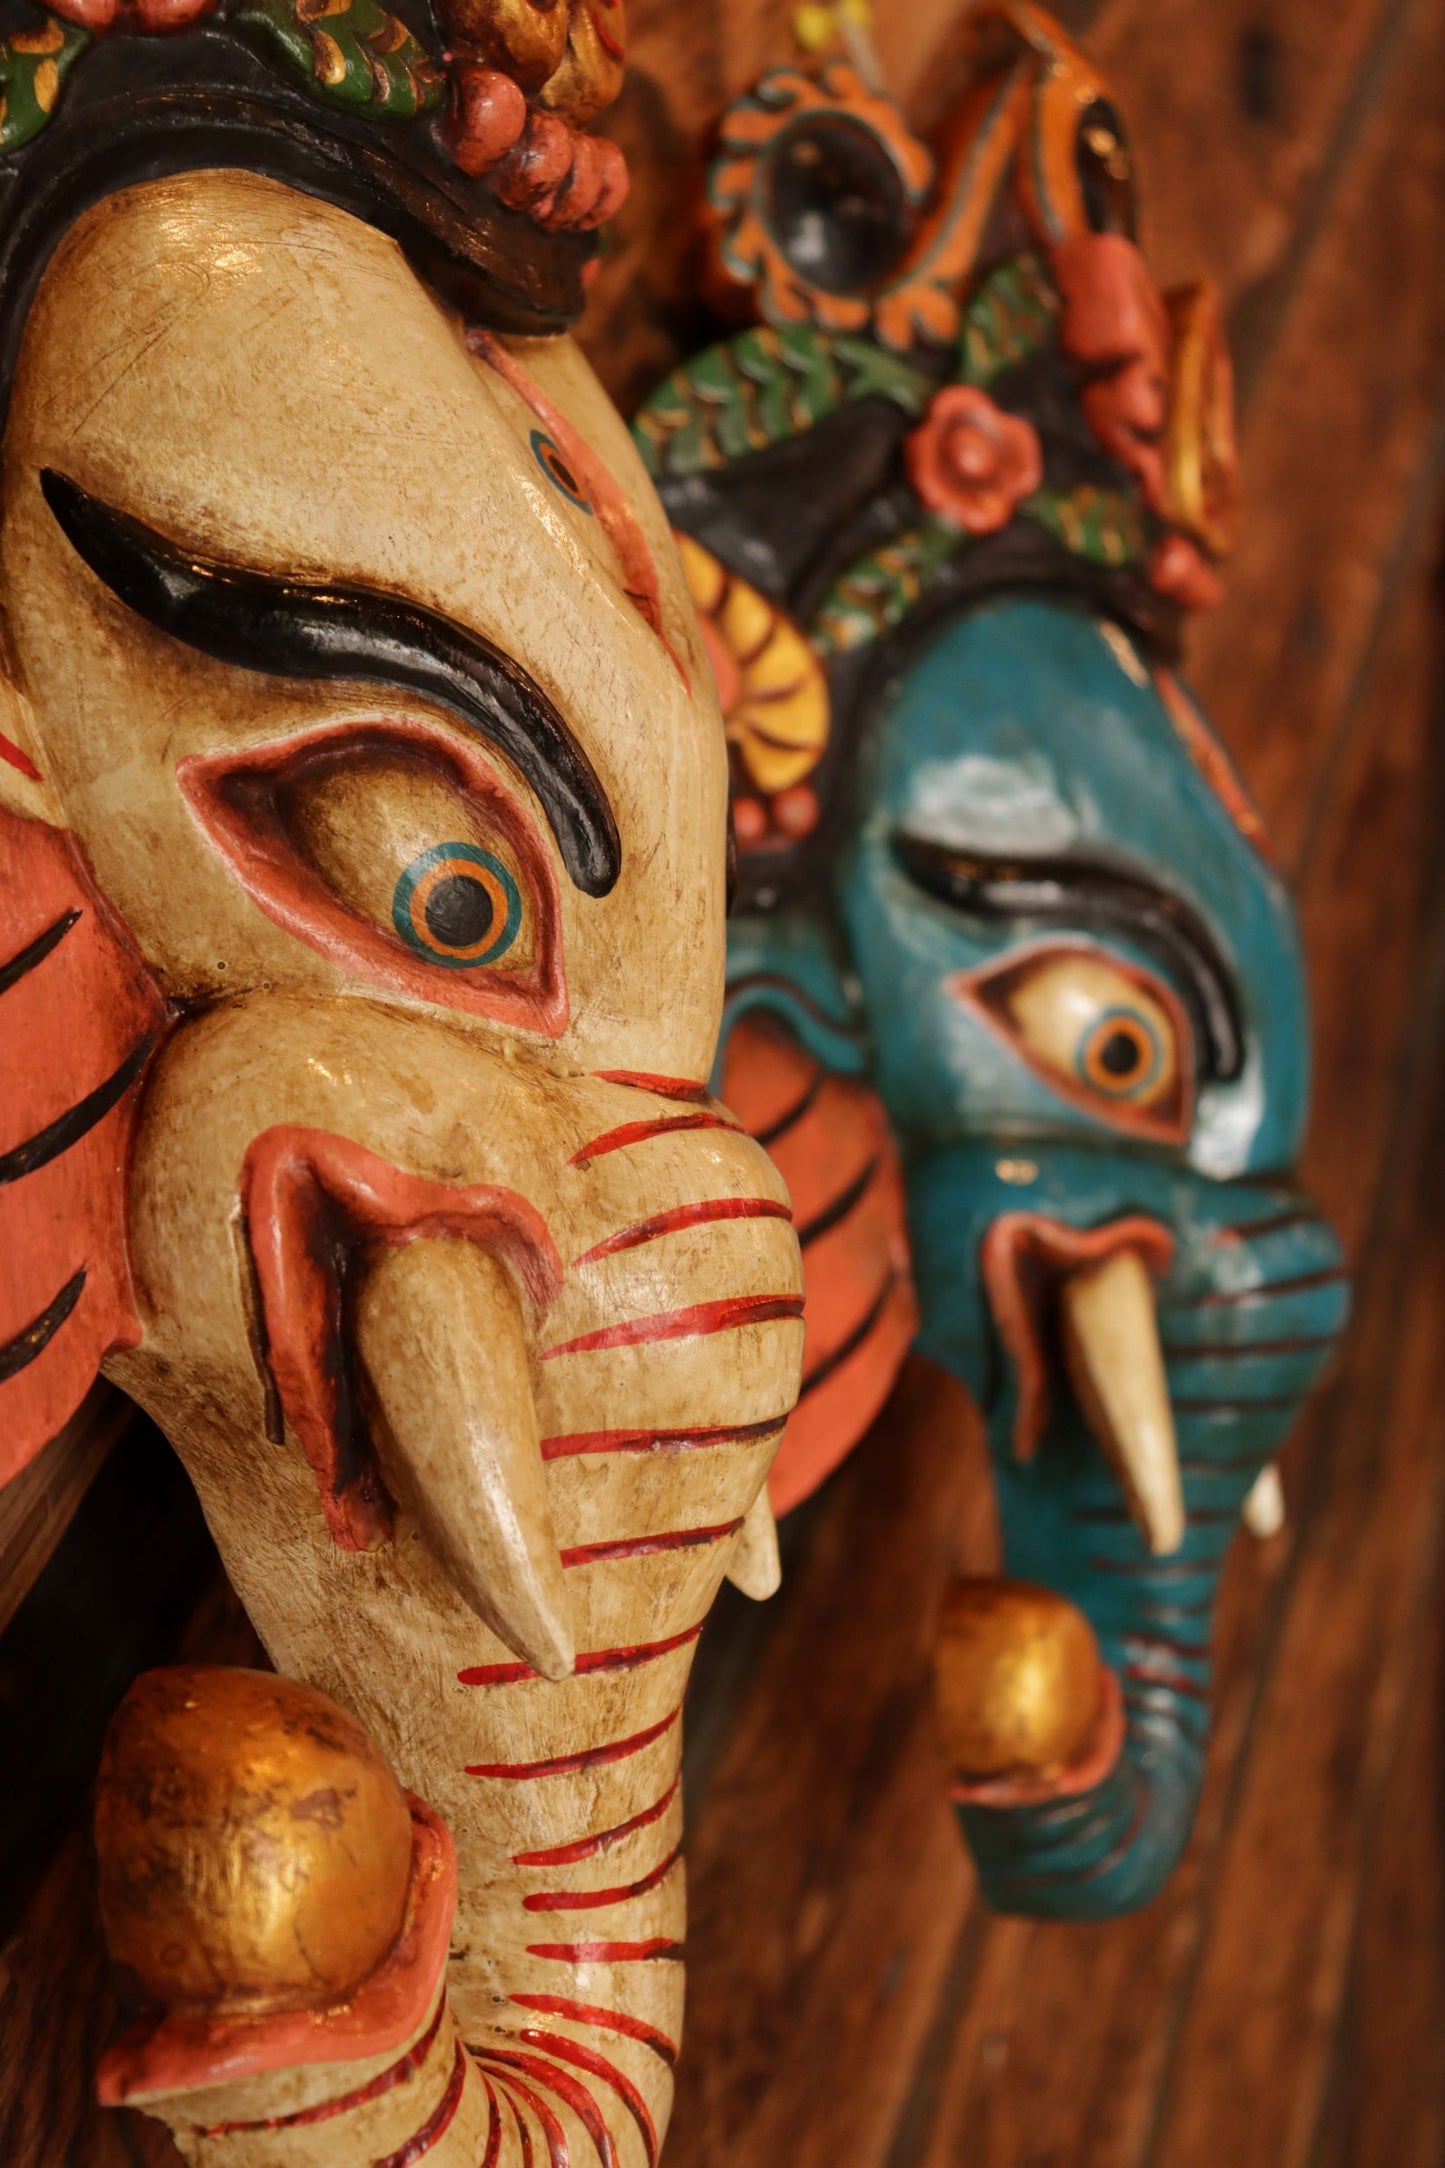 Carved Wooden Ganesha Mask